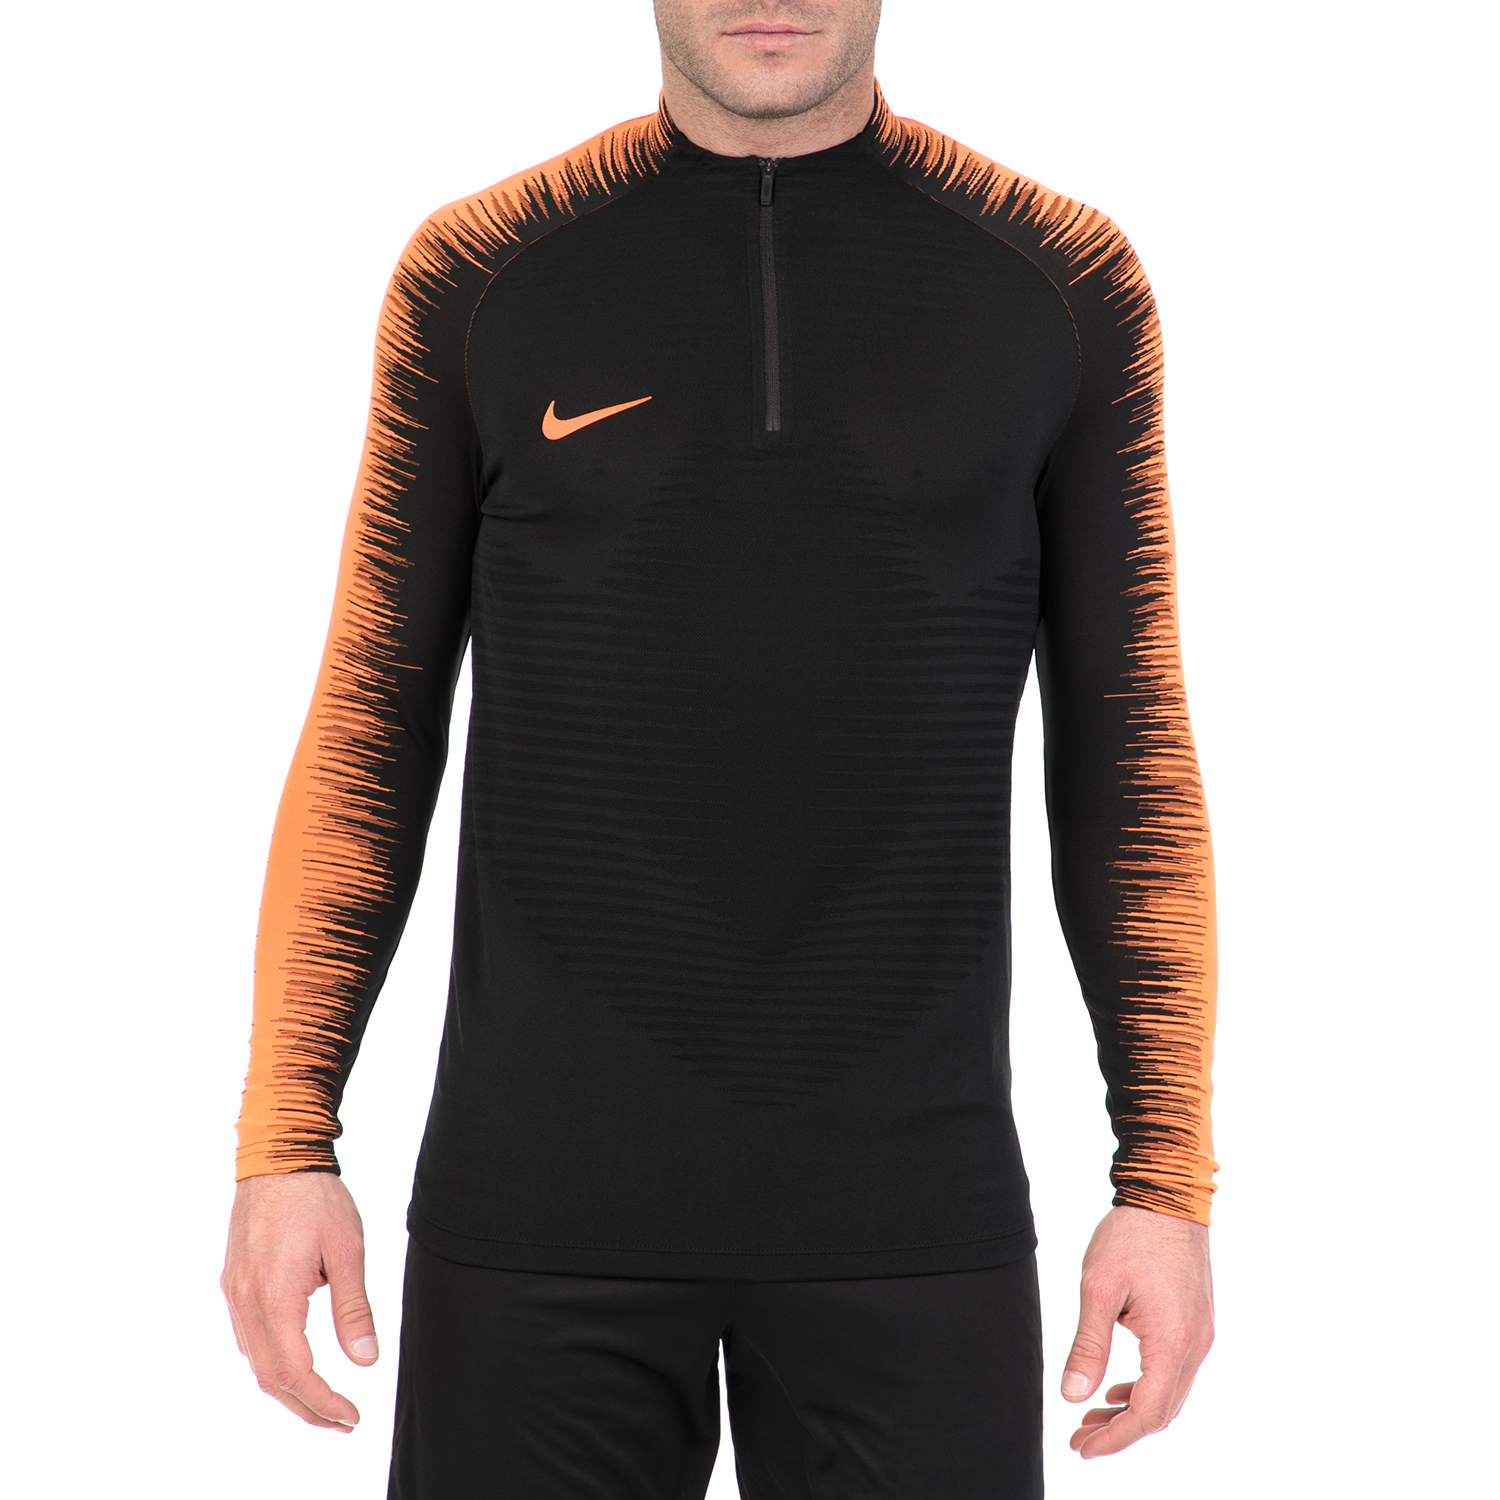 Ανδρικά/Ρούχα/Αθλητικά/Φούτερ-Μακρυμάνικα NIKE - Ανδρική μακρυμάνικη μπλούζα για τρέξιμο NIKE VPRKNIT STRKE DRIL μαύρη-πορτοκαλί